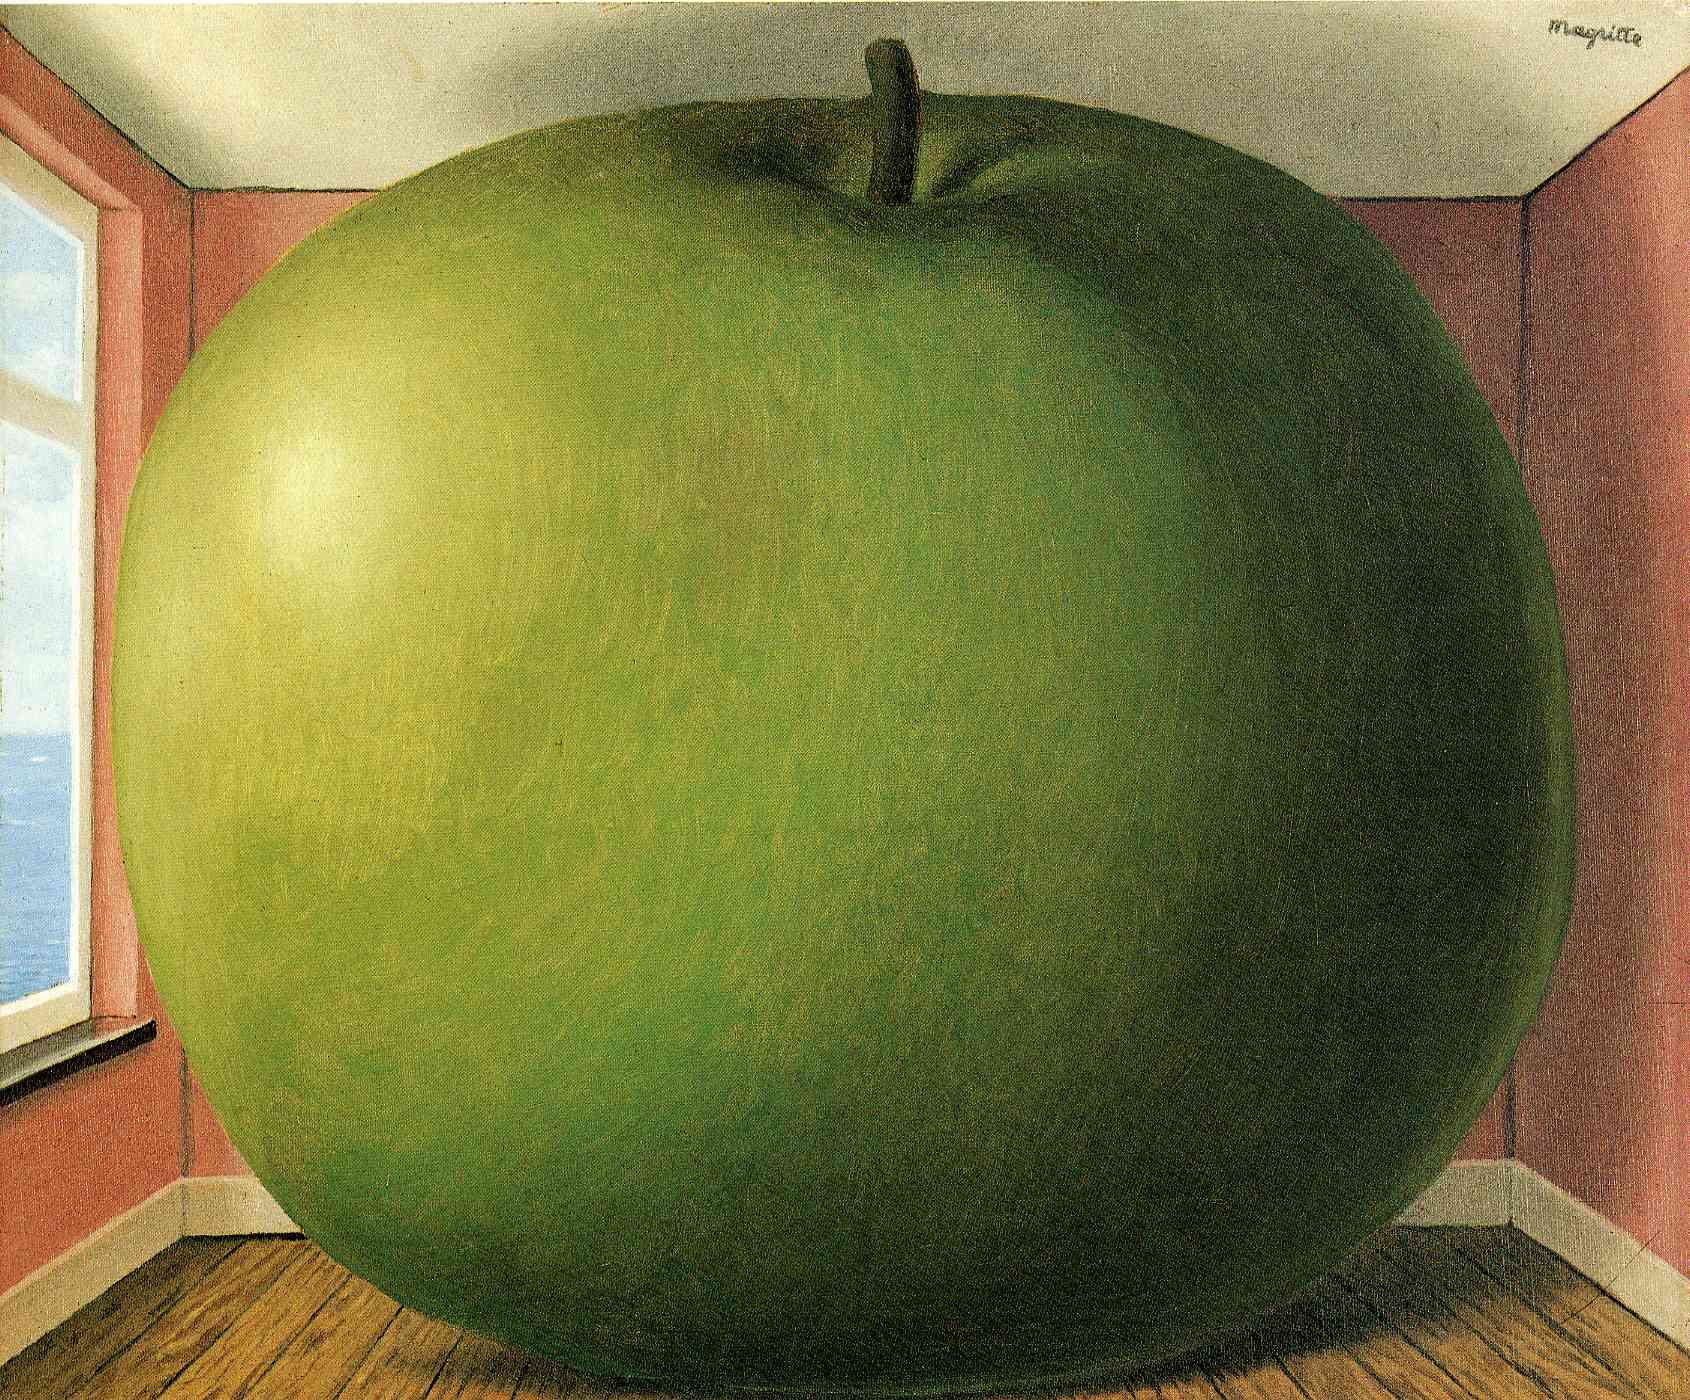 Pokój odsłuchowy by René Magritte - 1952 - 55 x 45 cm 